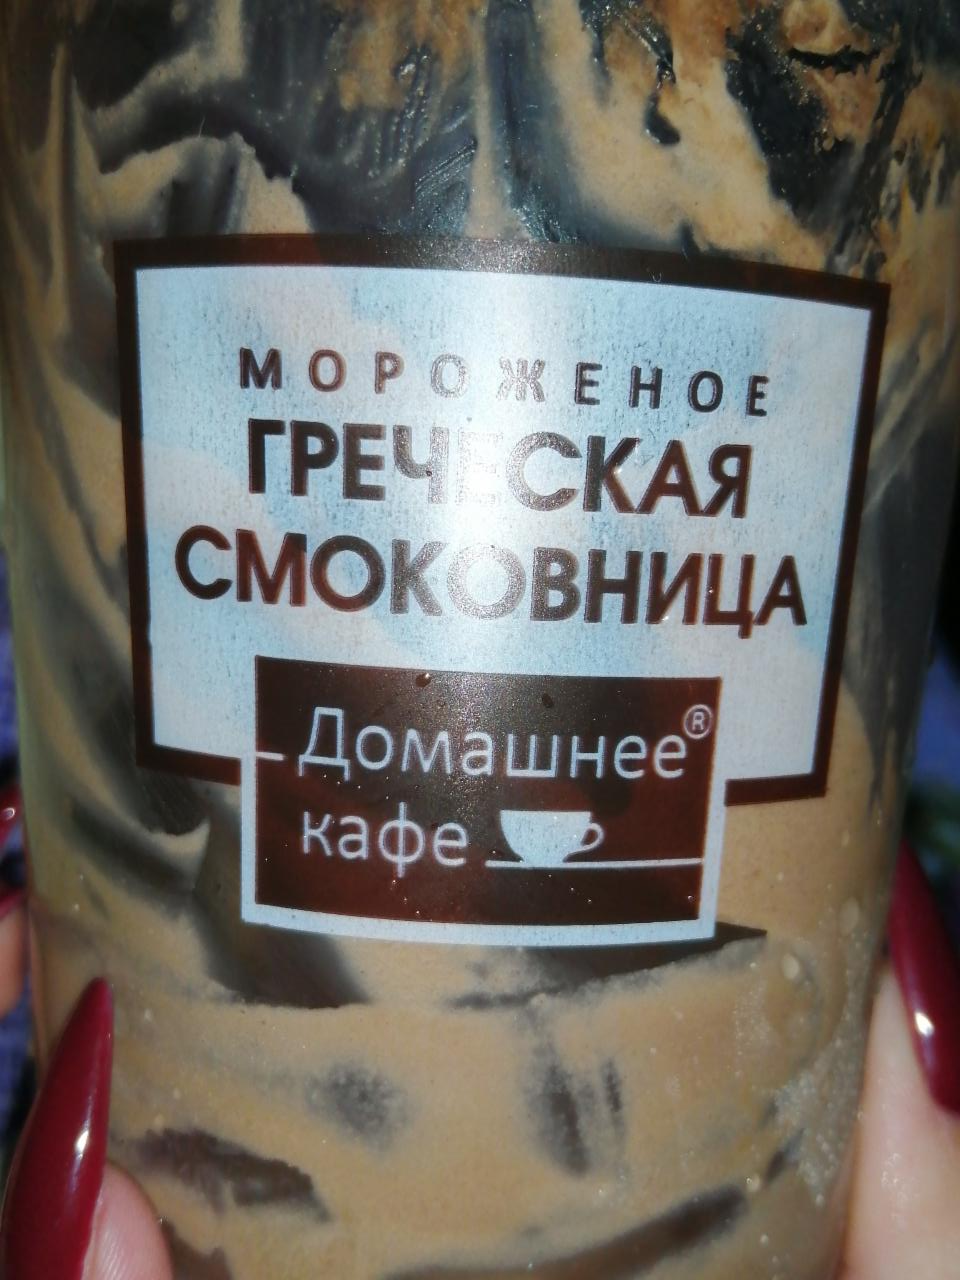 Фото - Мороженое шоколадное греческая смаковница Домашнее кафе